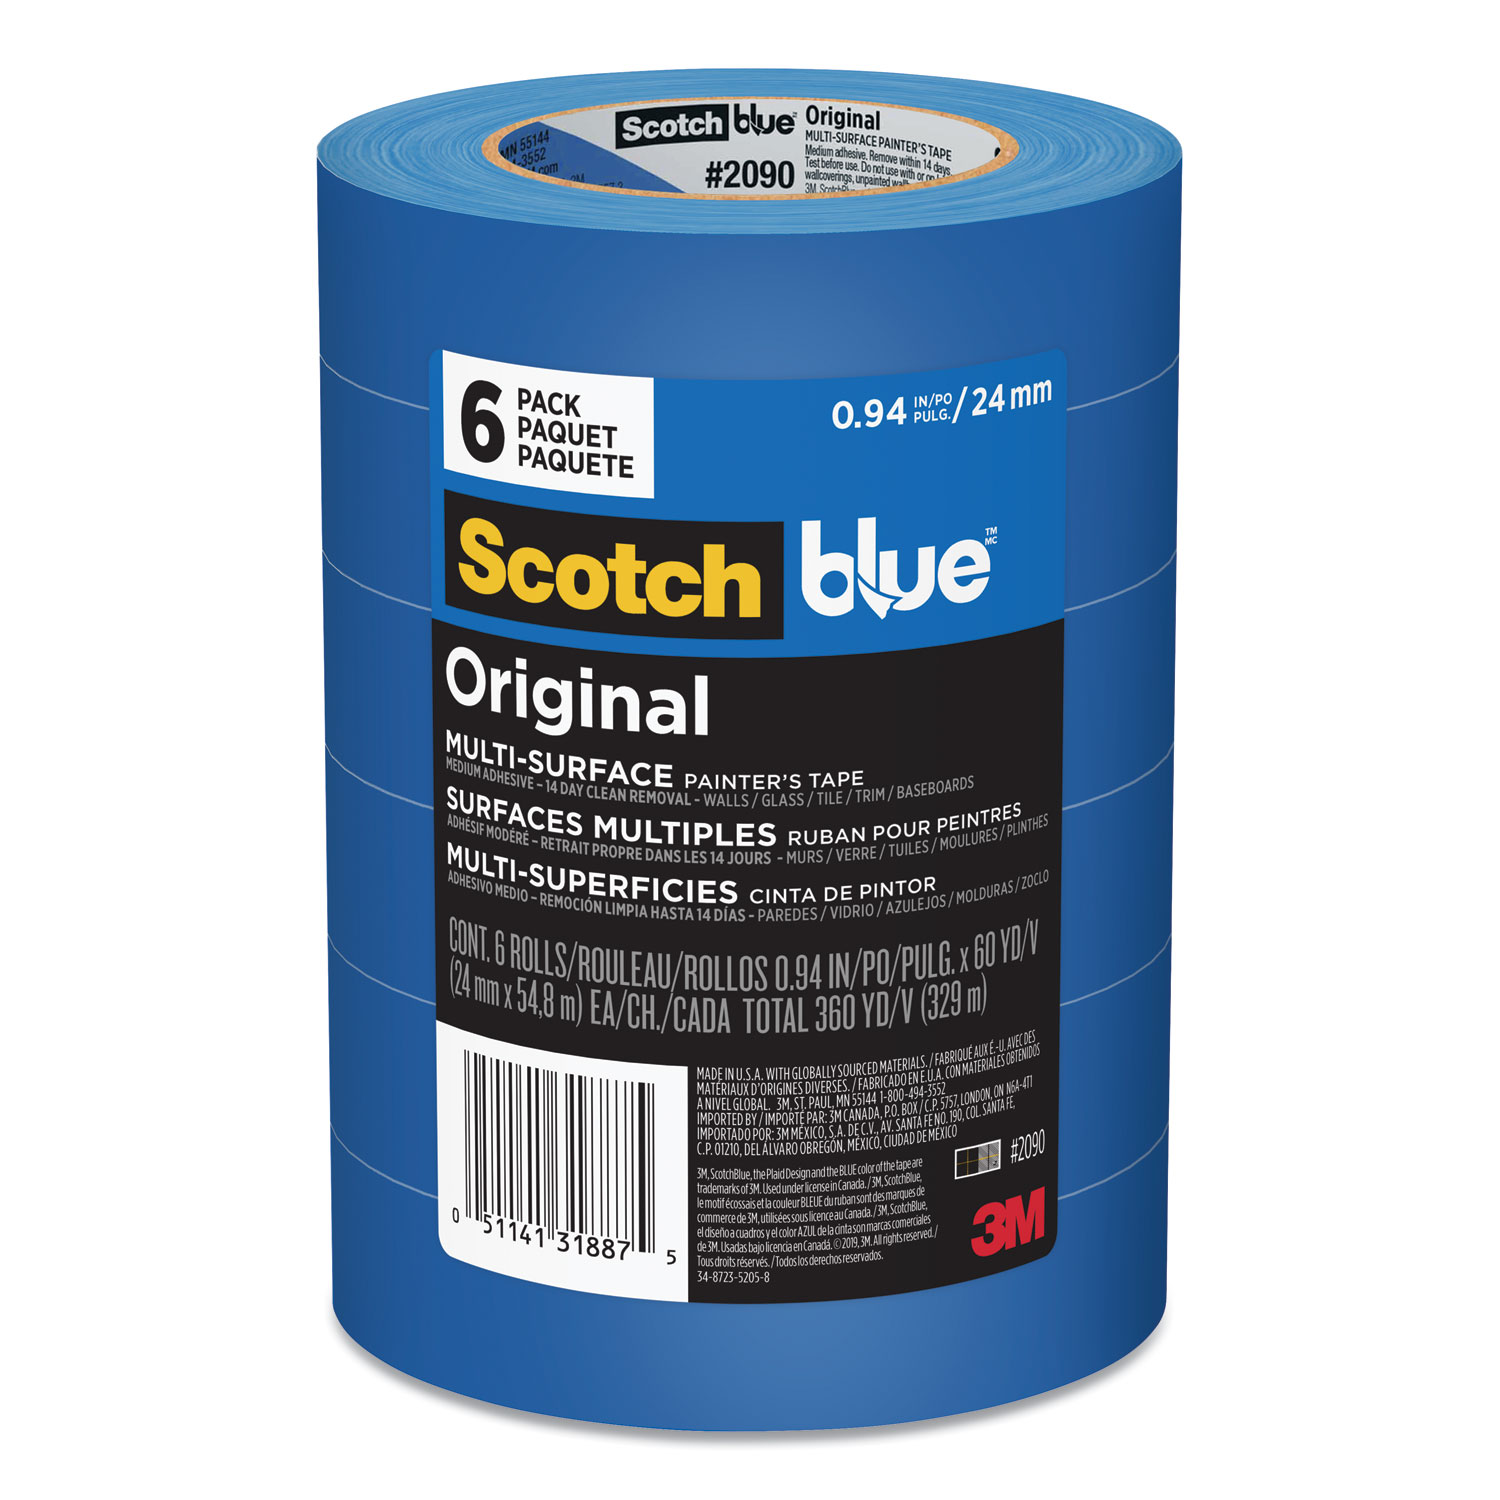  ScotchBlue 2090-24EVP Original Multi-Surface Painter's Tape, 3 Core, 0.94 x 60 yds, Blue, 6/Pack (MMM209024EVP) 